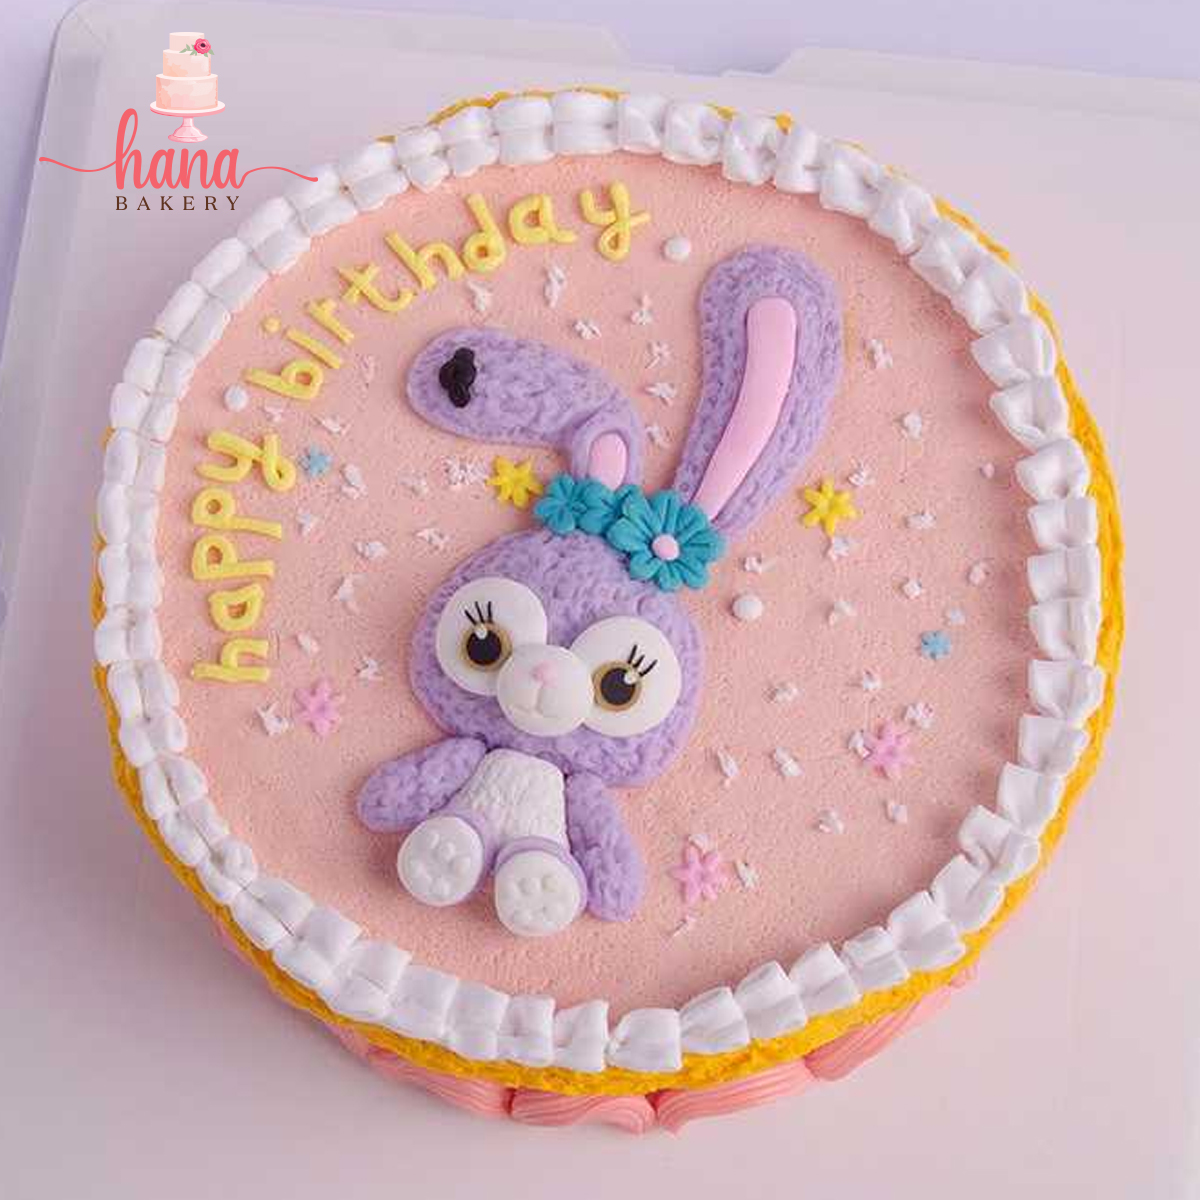 Nếu con bạn yêu thích thỏ, đừng bỏ qua chiếc bánh kem hình thỏ dễ thương này. Hình thỏ trên trên chiếc bánh kem Hana Thủ Đức sẽ gây quyến rũ và tạo sự bất ngờ cho bữa tiệc sinh nhật của bạn.